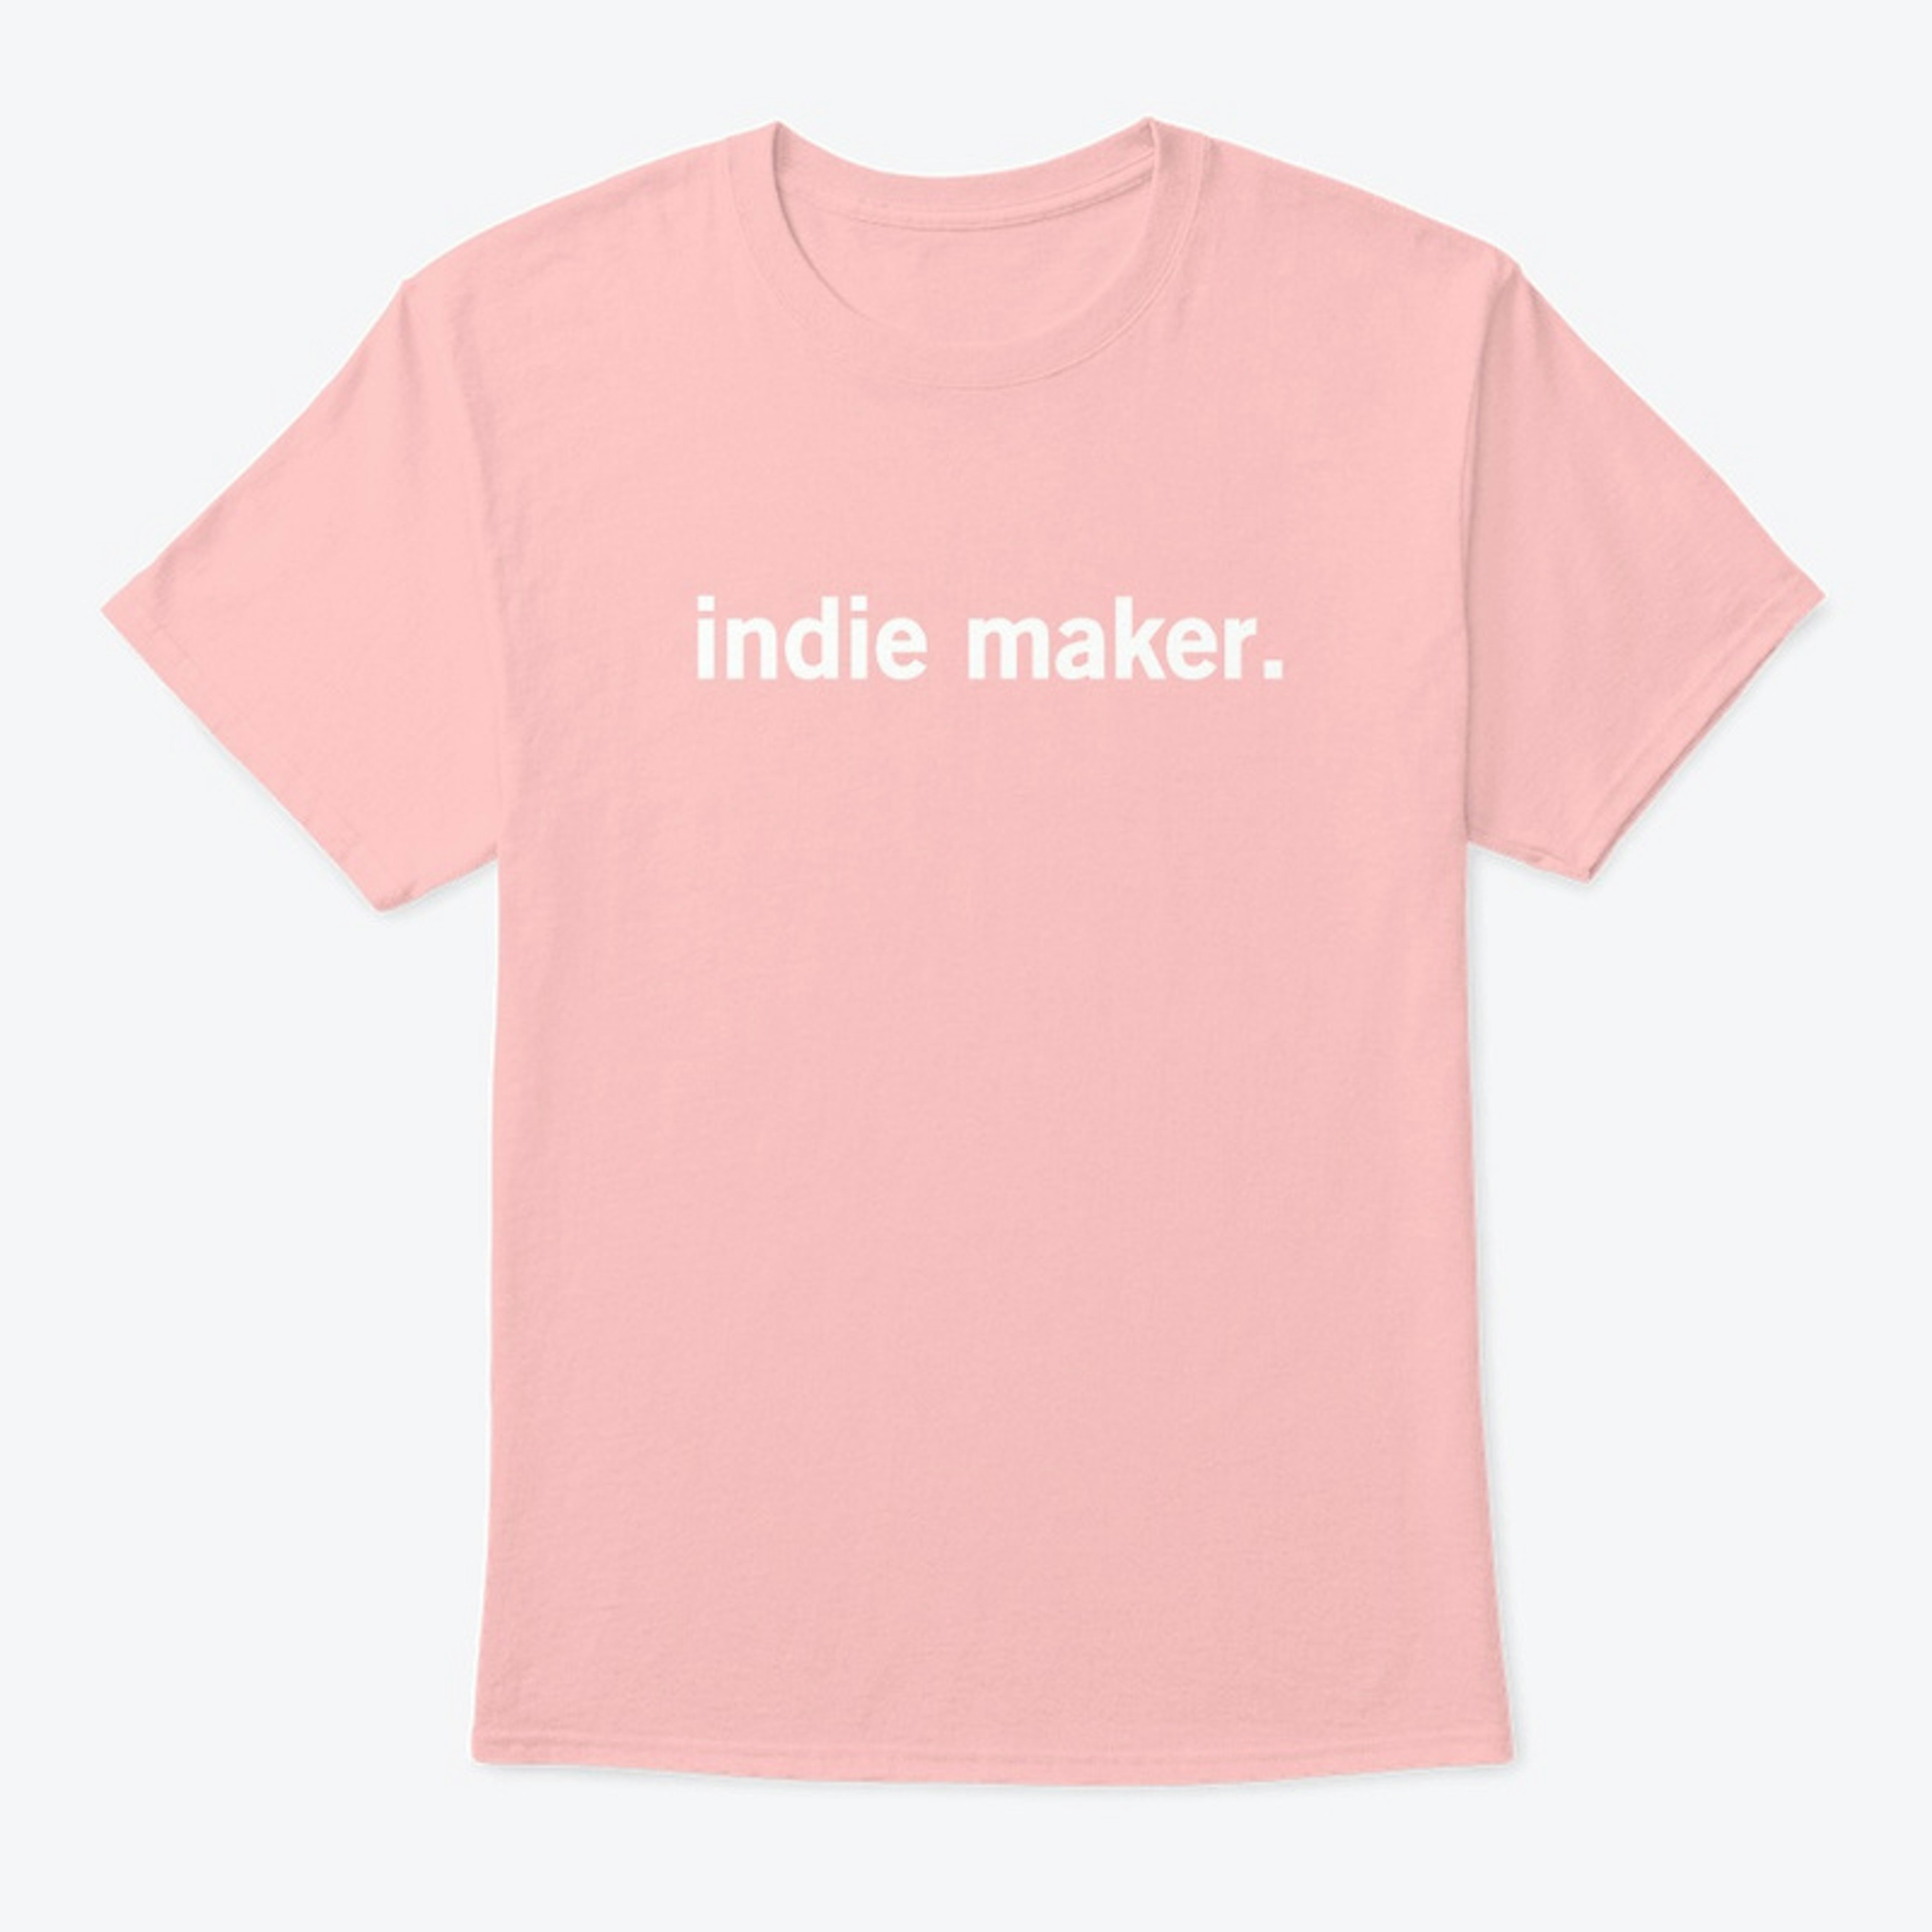 Indie Maker.